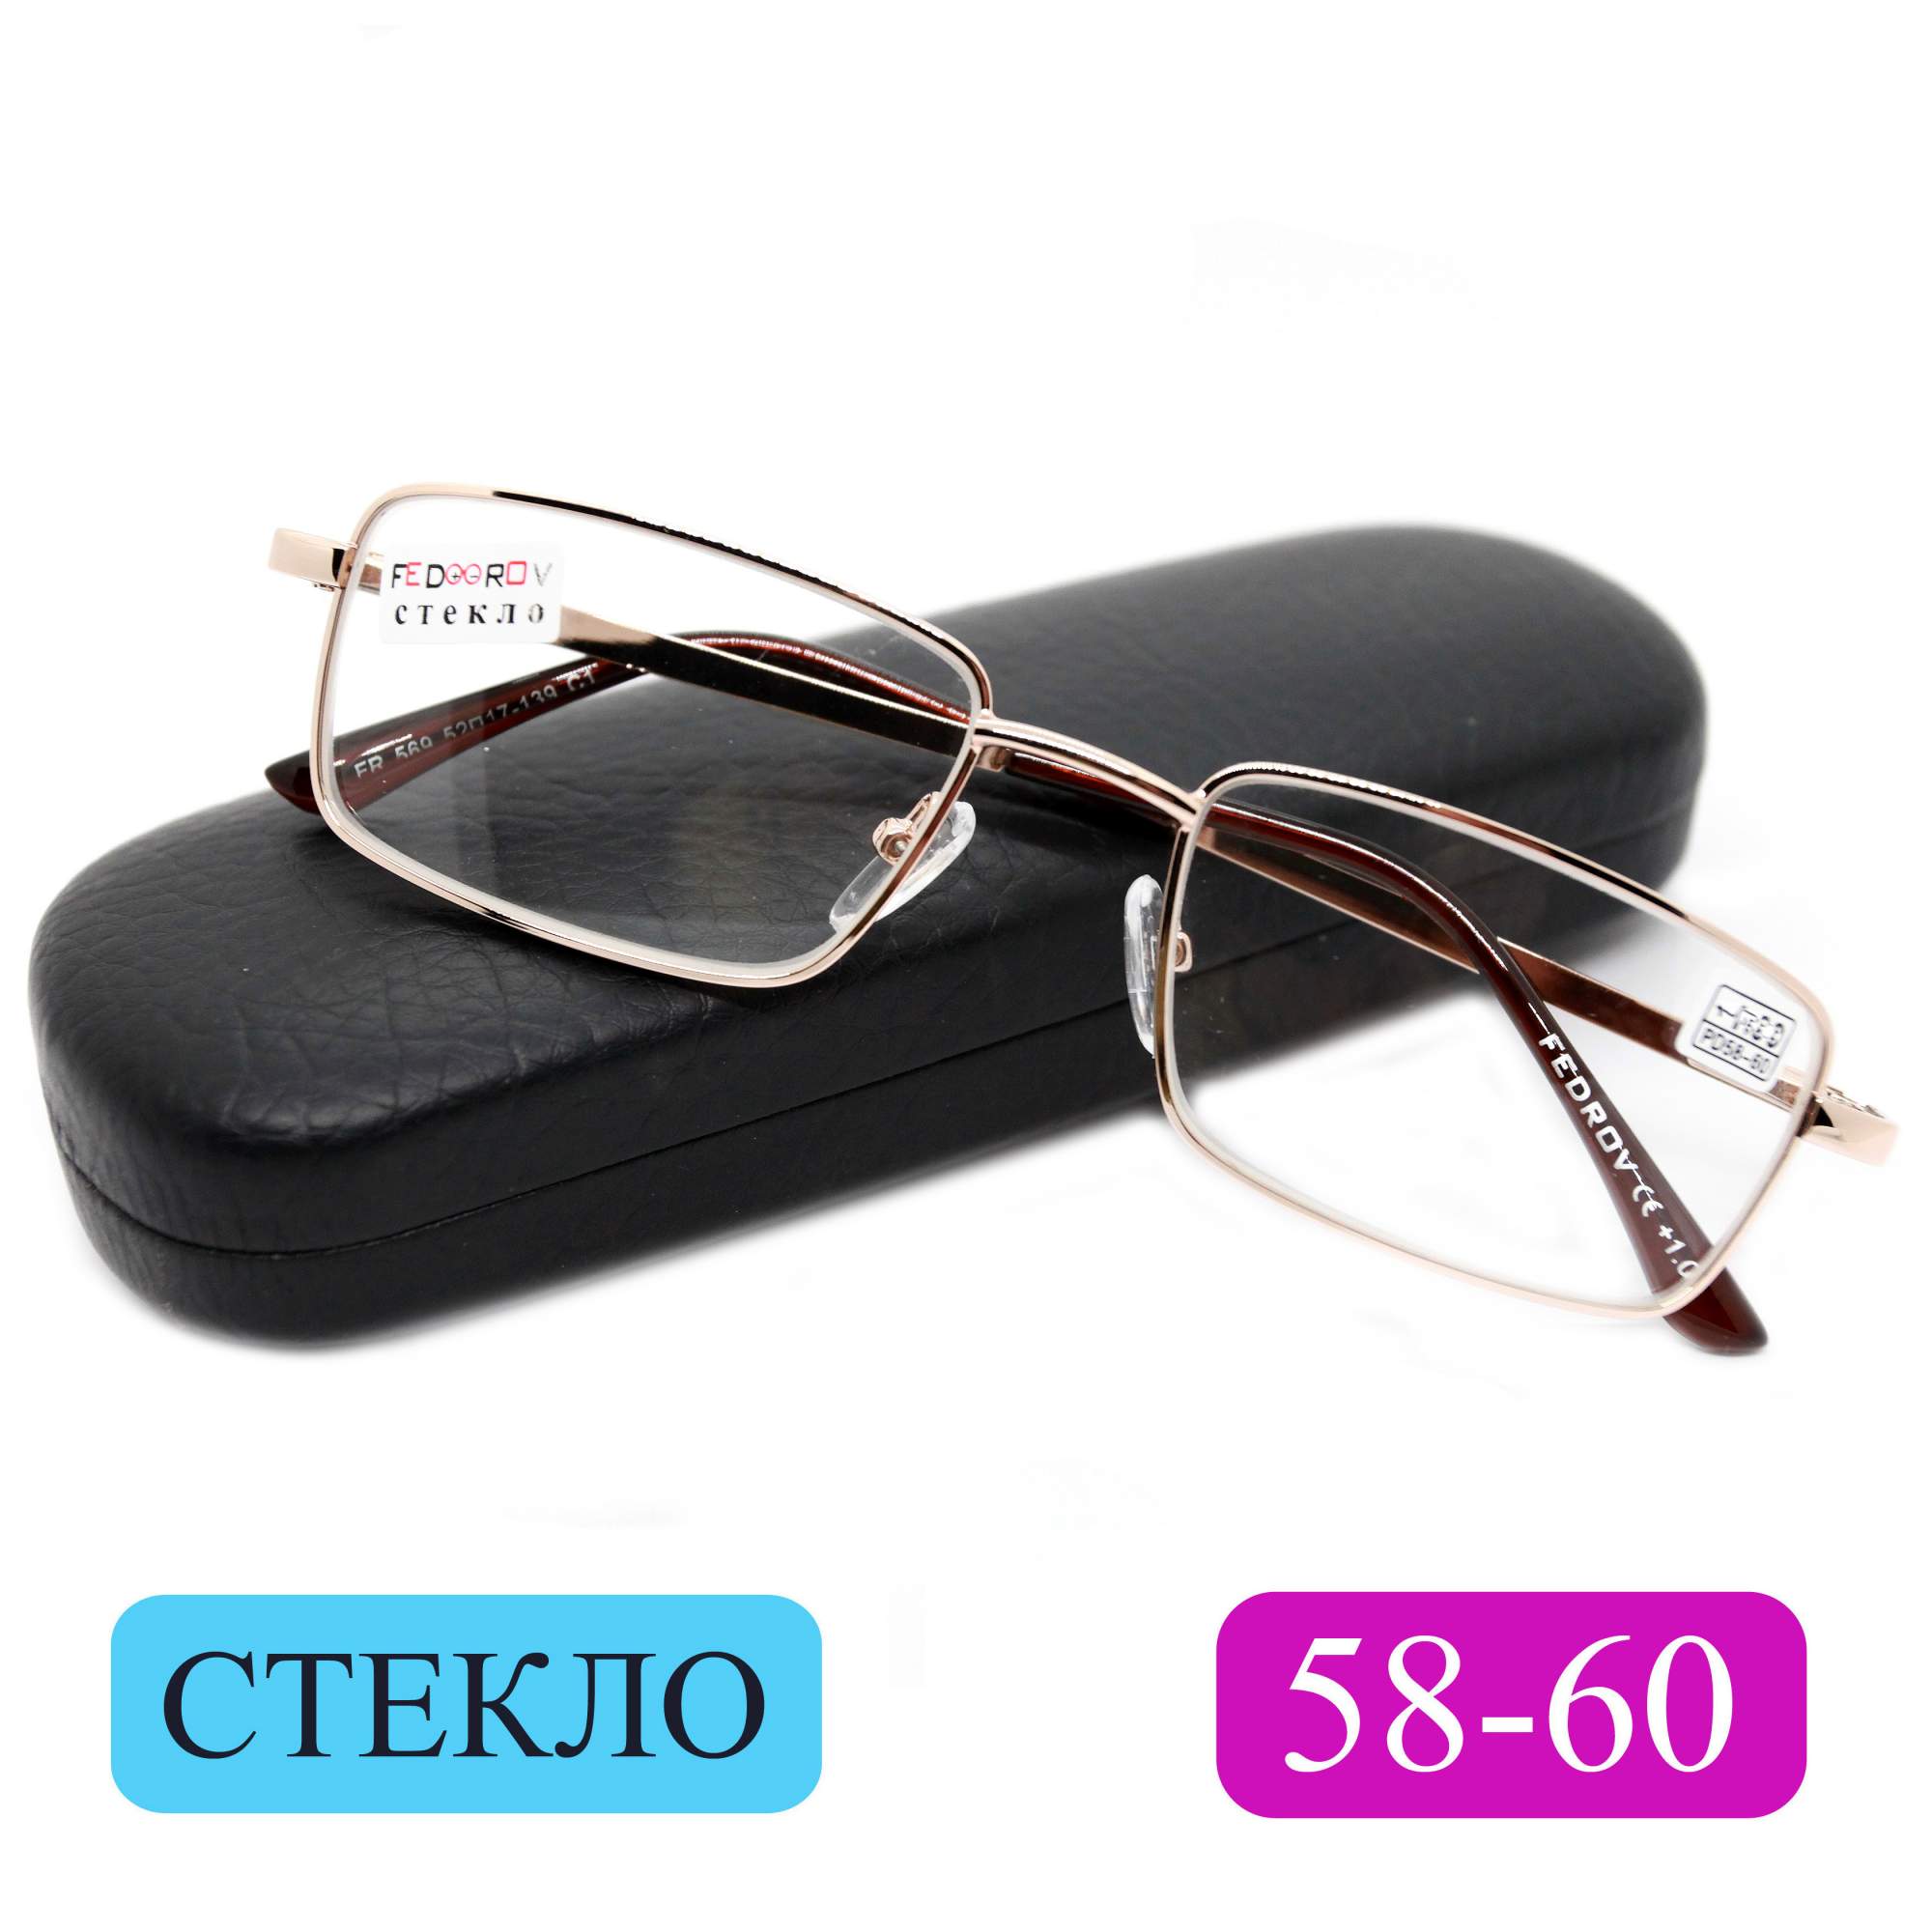 Готовые очки Fedrov 569, со стеклянной линзой, +3,25, c футляром, золотые, РЦ 58-60